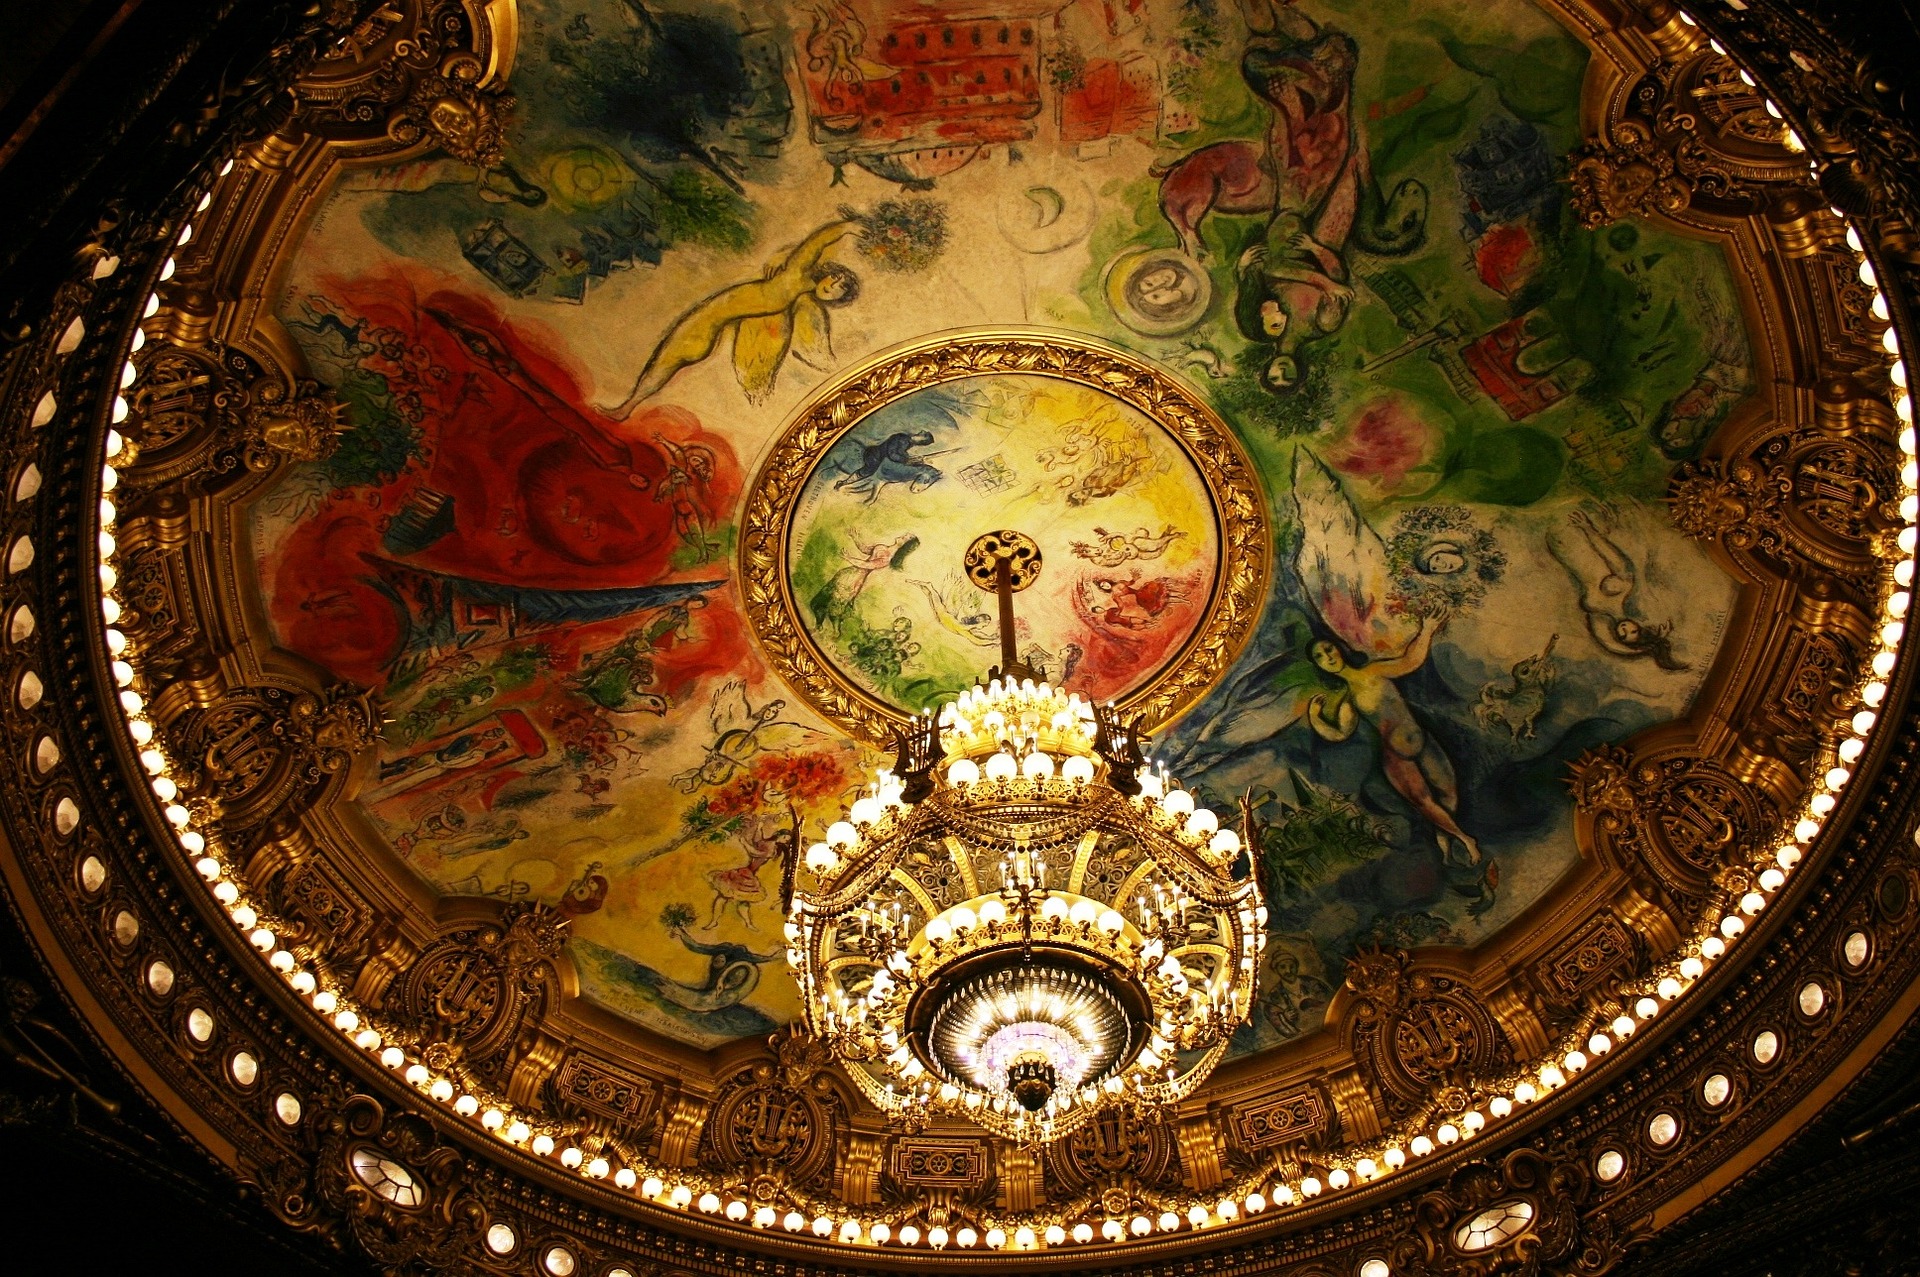 Chandelier at the Opera Garnier in Paris